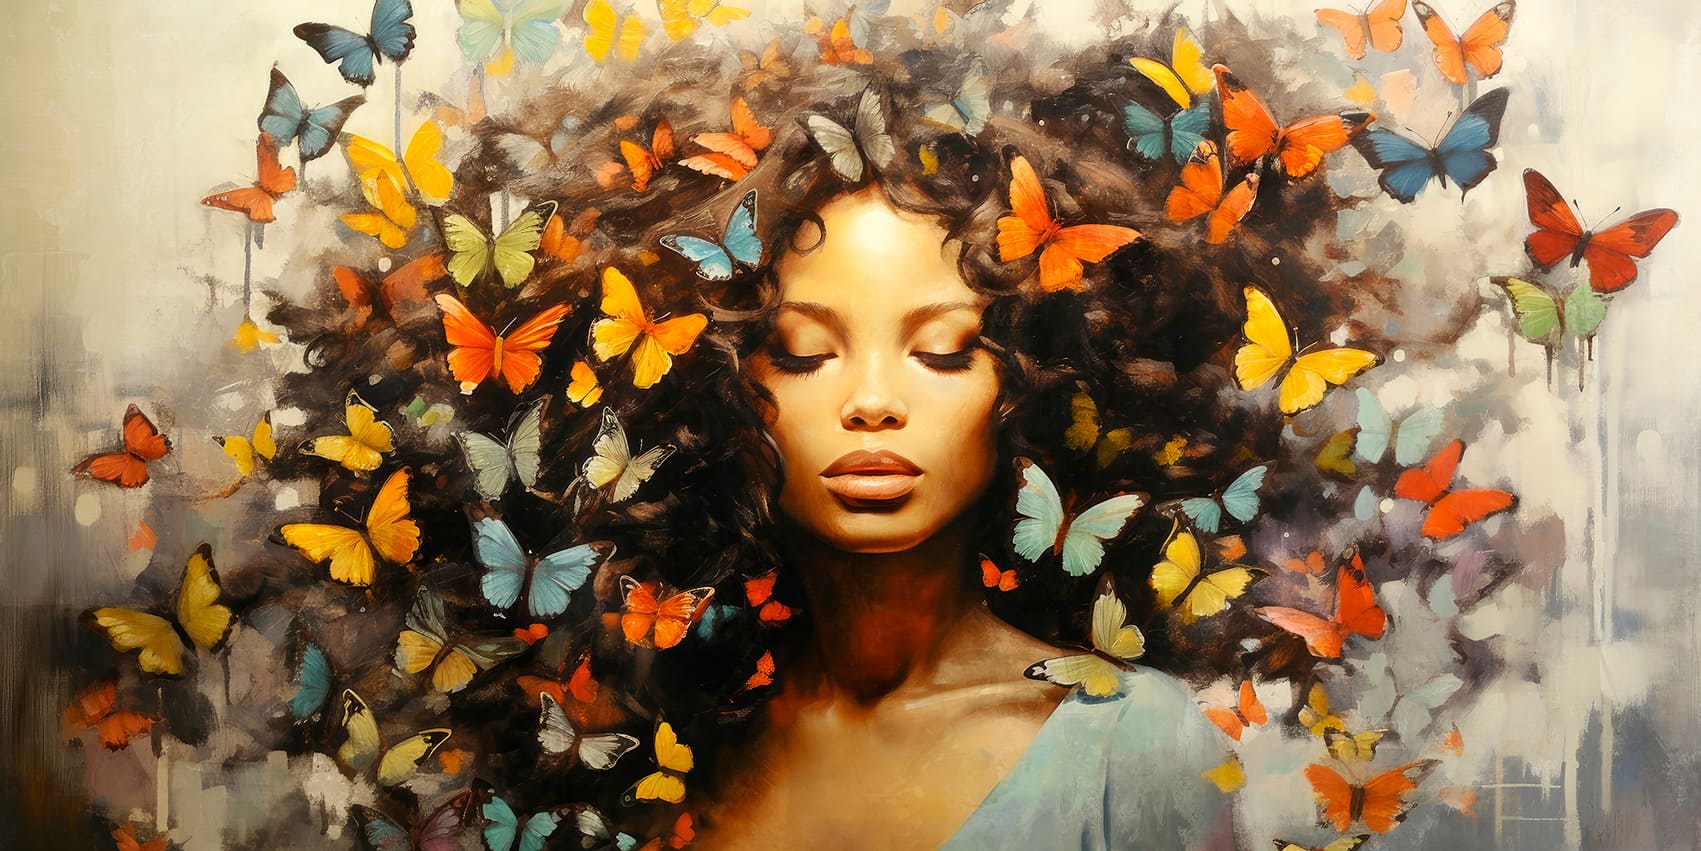 Ölbild Frau mit lockigen Schmetterlingen